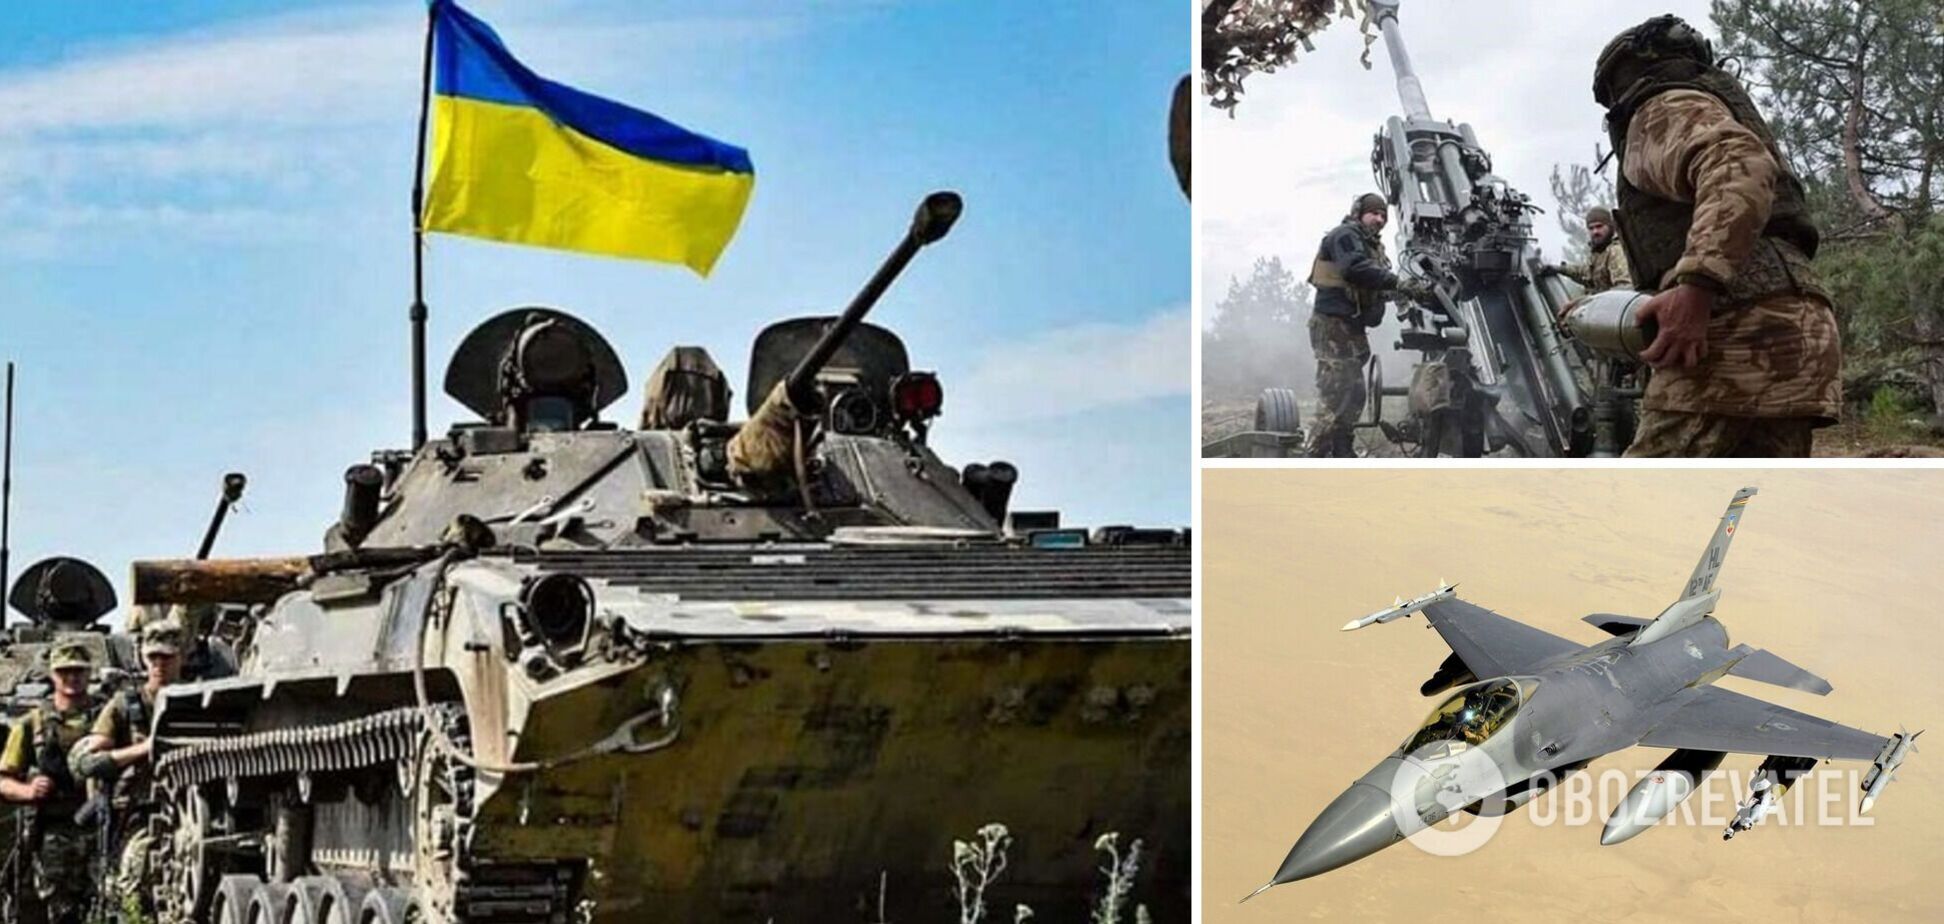 Запад должен поставить Украине F-16, иначе российские самолеты могут получить контроль над украинским небом – The Economist